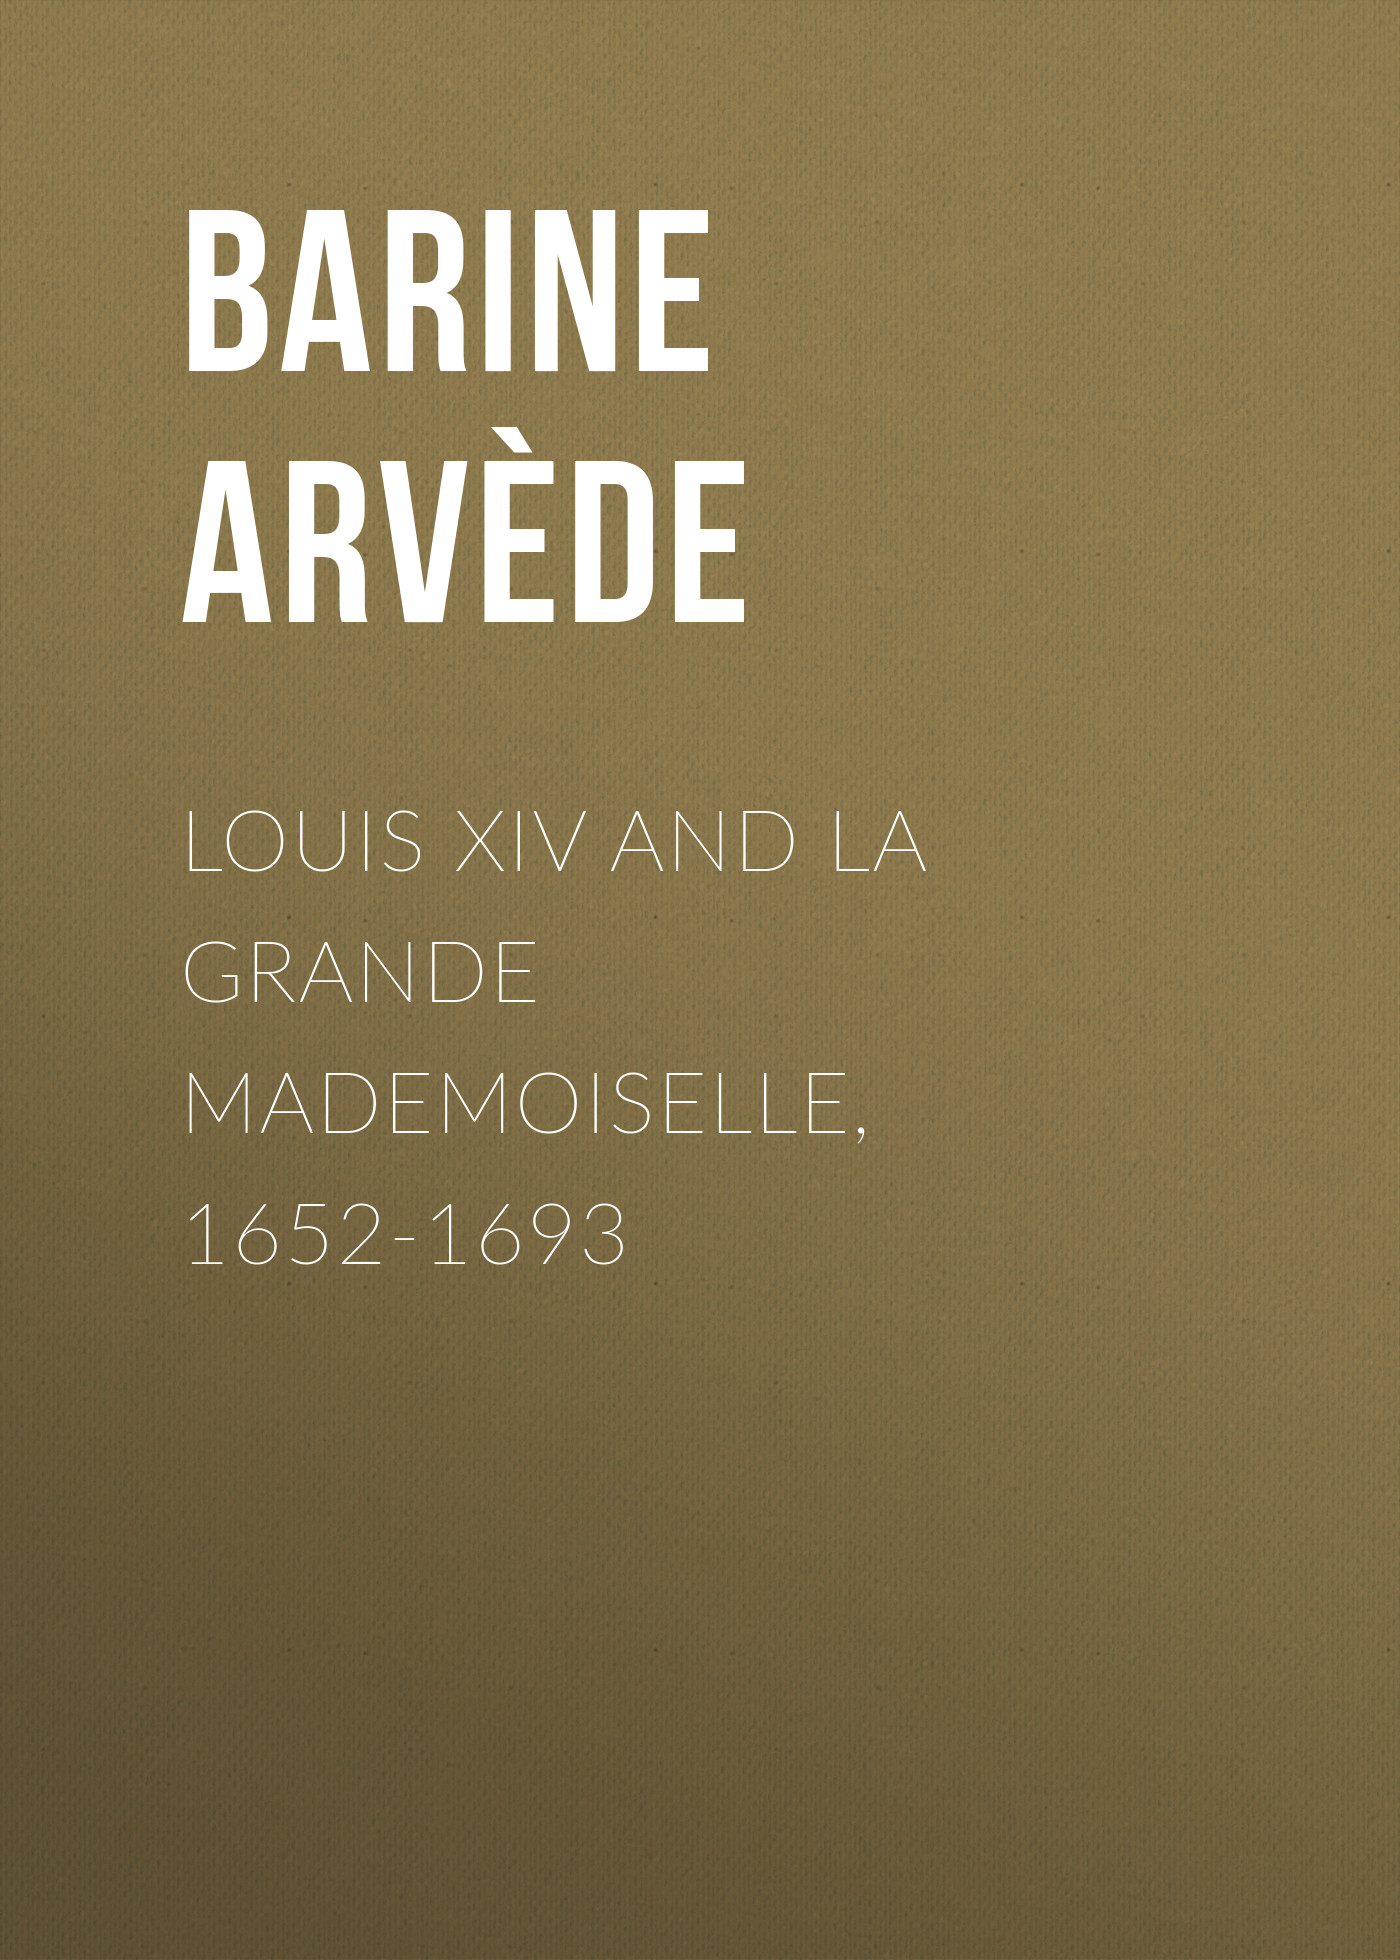 Книга Louis XIV and La Grande Mademoiselle, 1652-1693 из серии , созданная Arvède Barine, может относится к жанру Зарубежная старинная литература, Зарубежная классика. Стоимость электронной книги Louis XIV and La Grande Mademoiselle, 1652-1693 с идентификатором 24177116 составляет 0.90 руб.